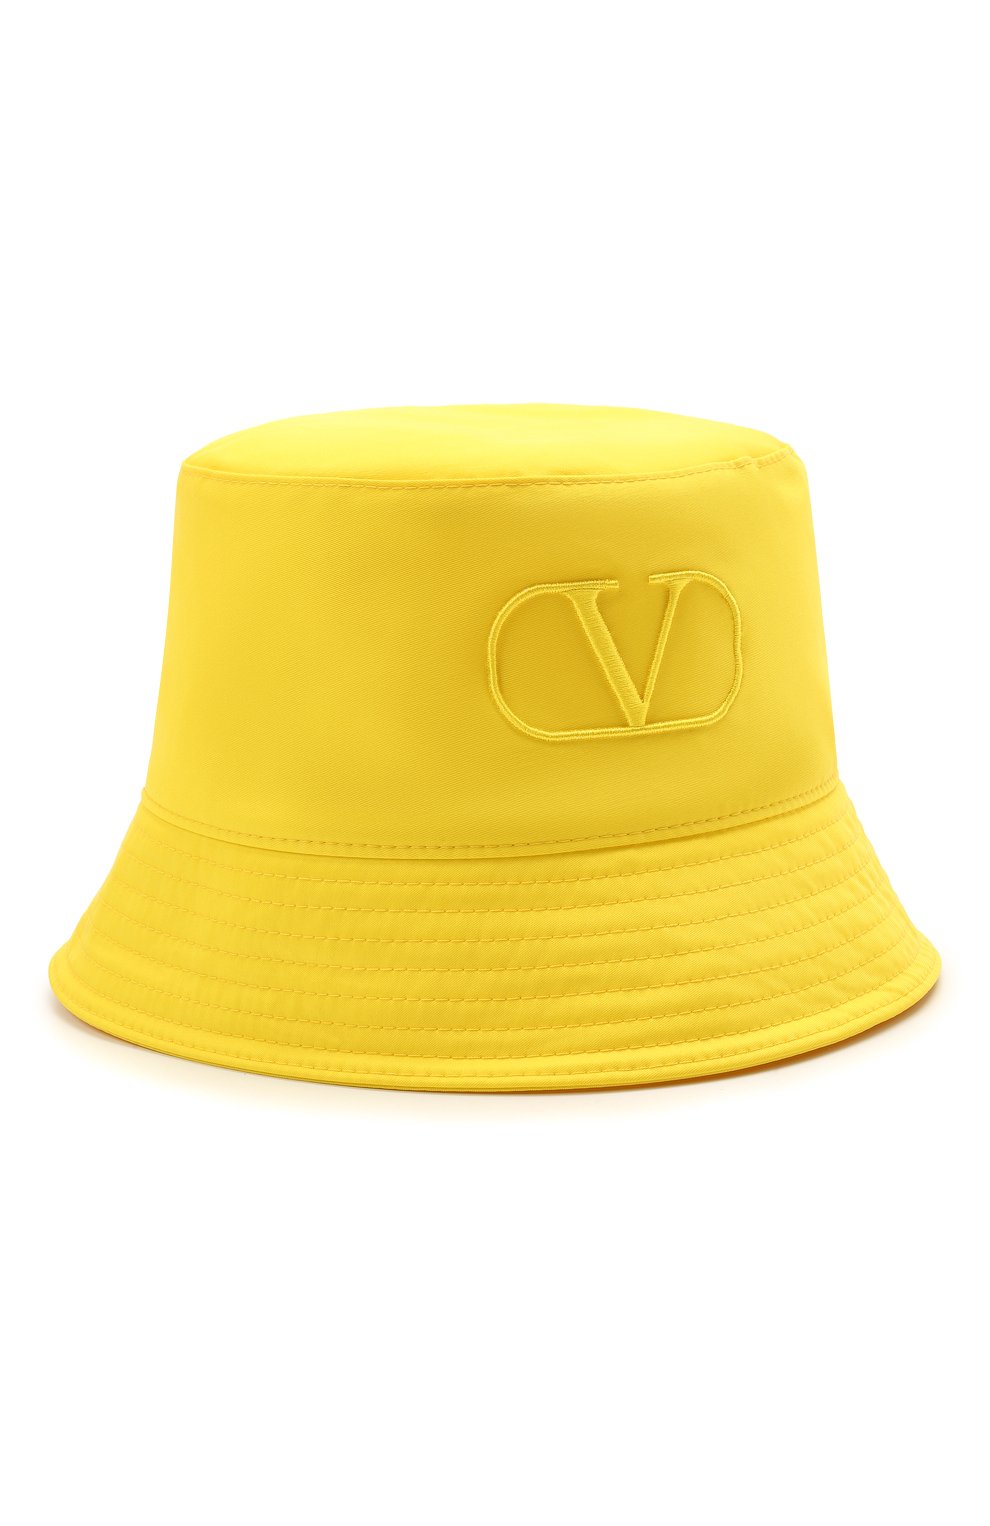 Мужская панама VALENTINO желтого цвета, арт. WY2HGA11/ISA | Фото 1 (Материал: Текстиль, Синтетический материал)